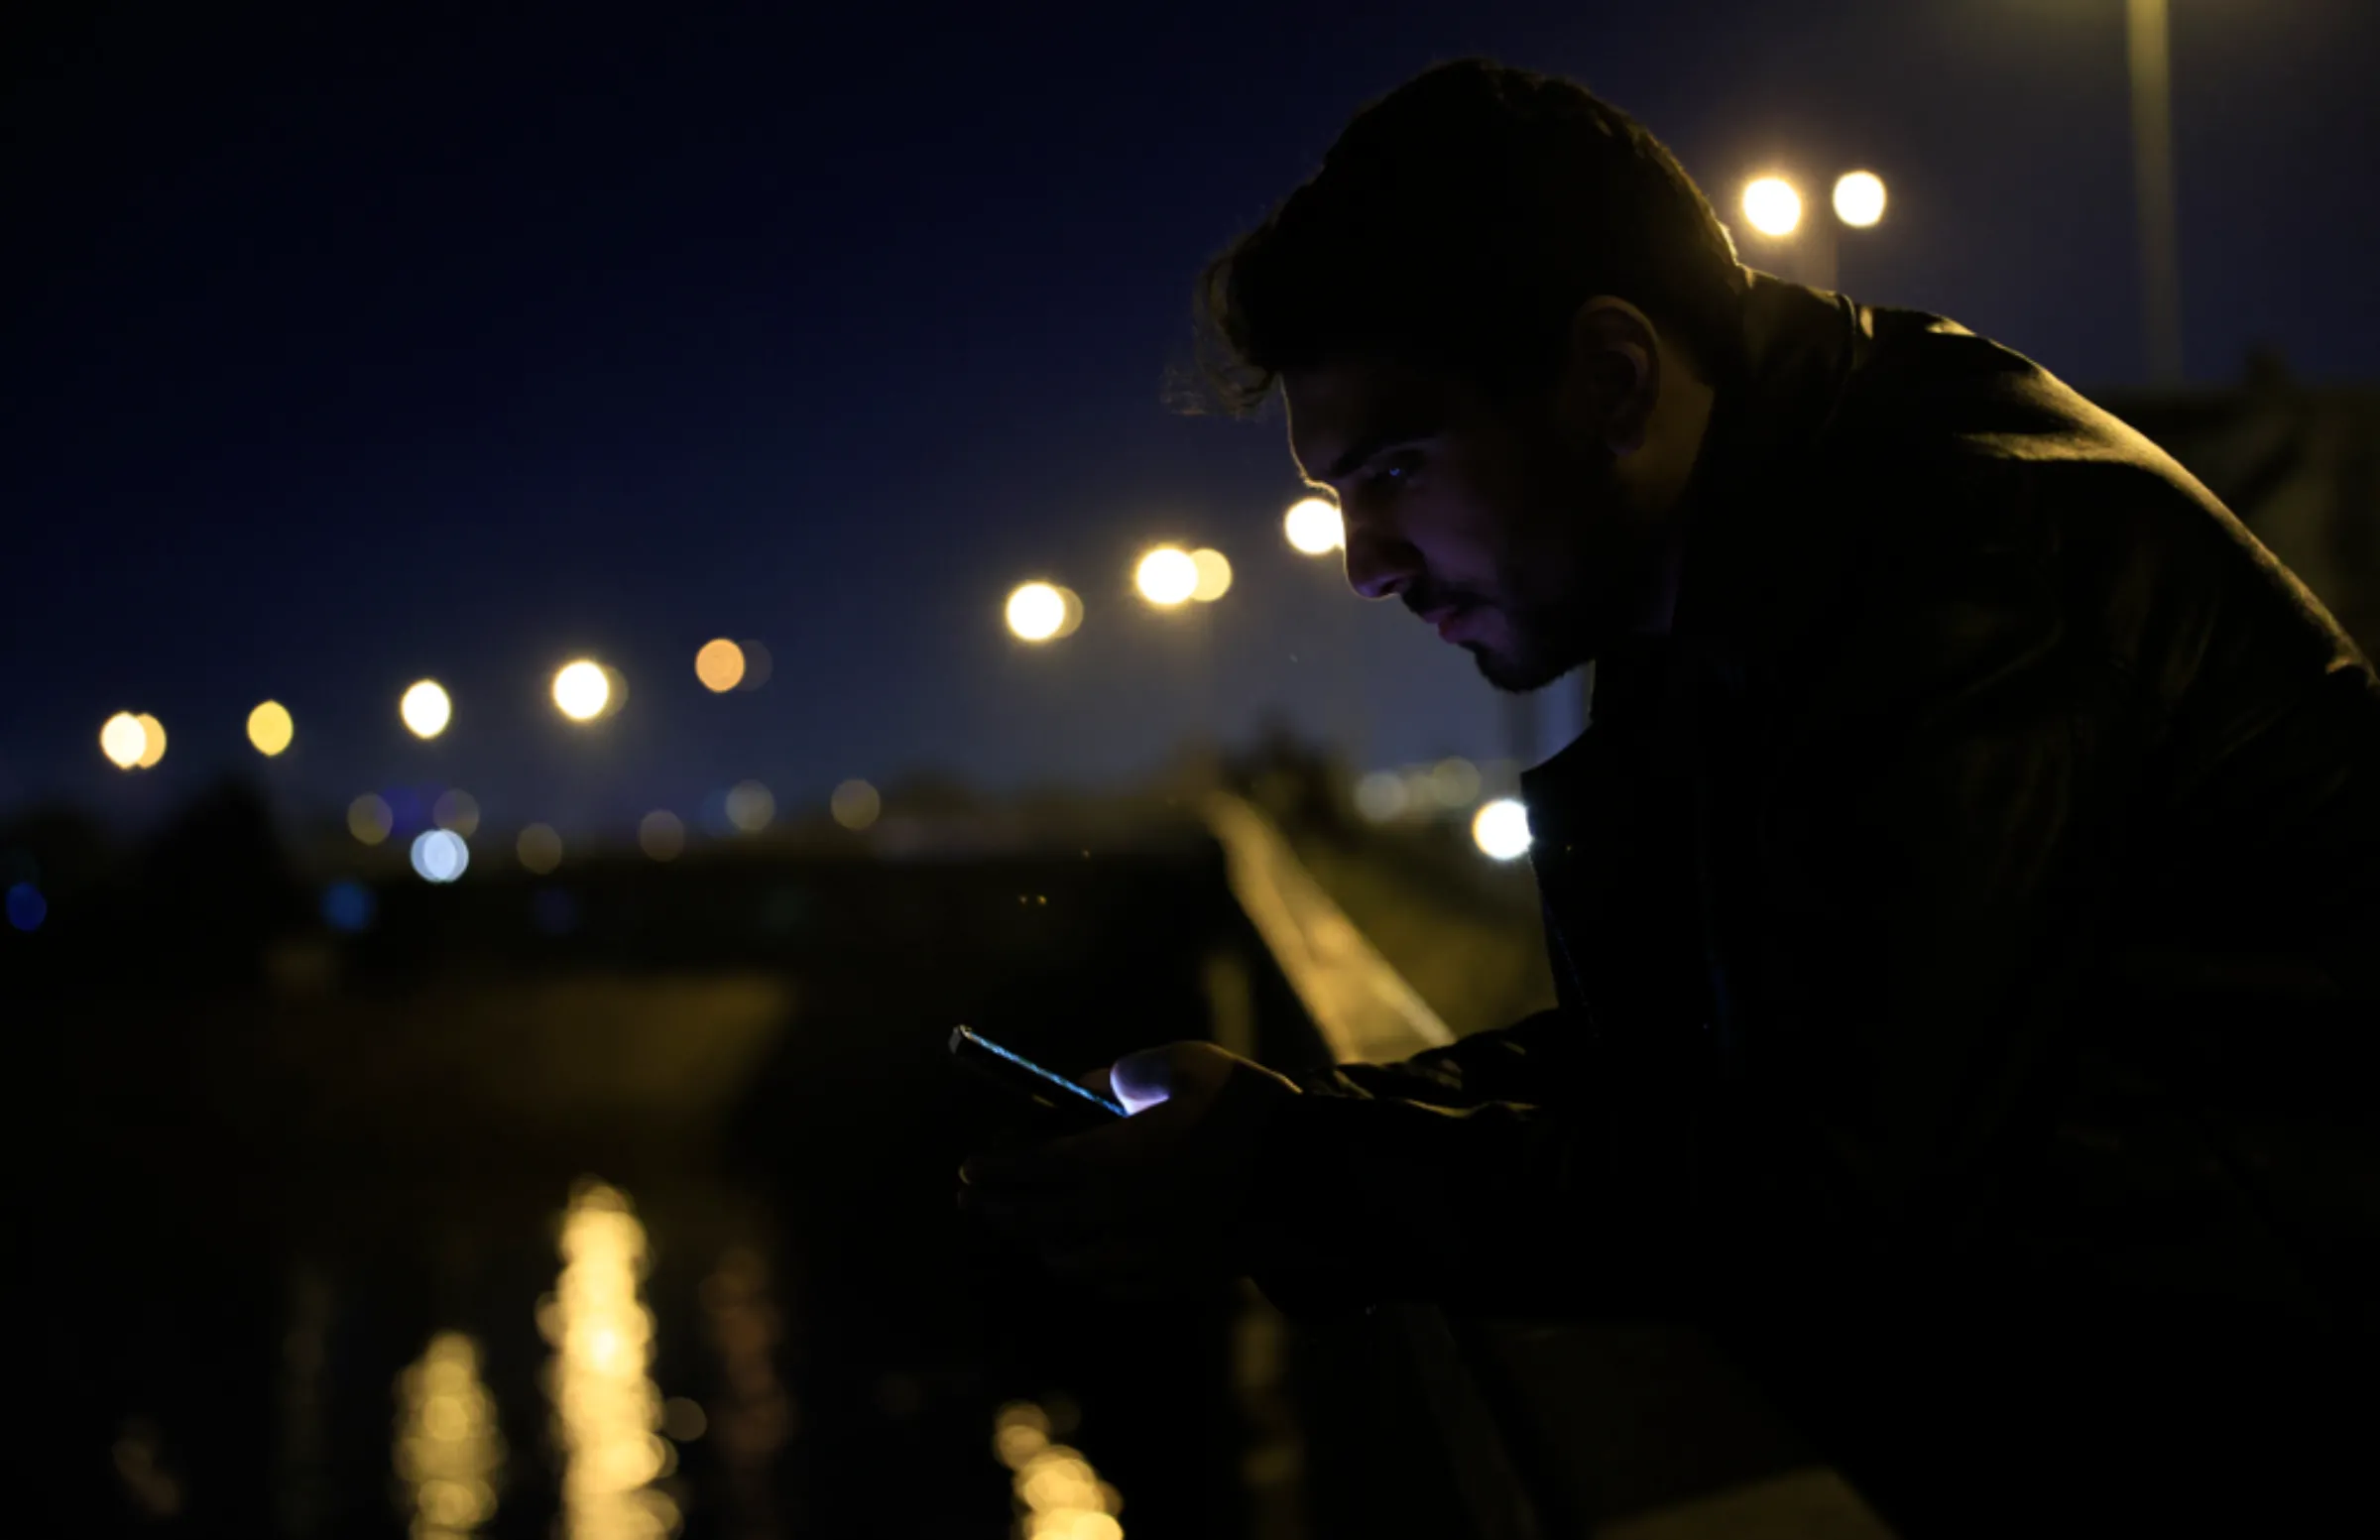 Ali al-Mikdam looks at his phone in Baghdad, Iraq, January 31, 2023